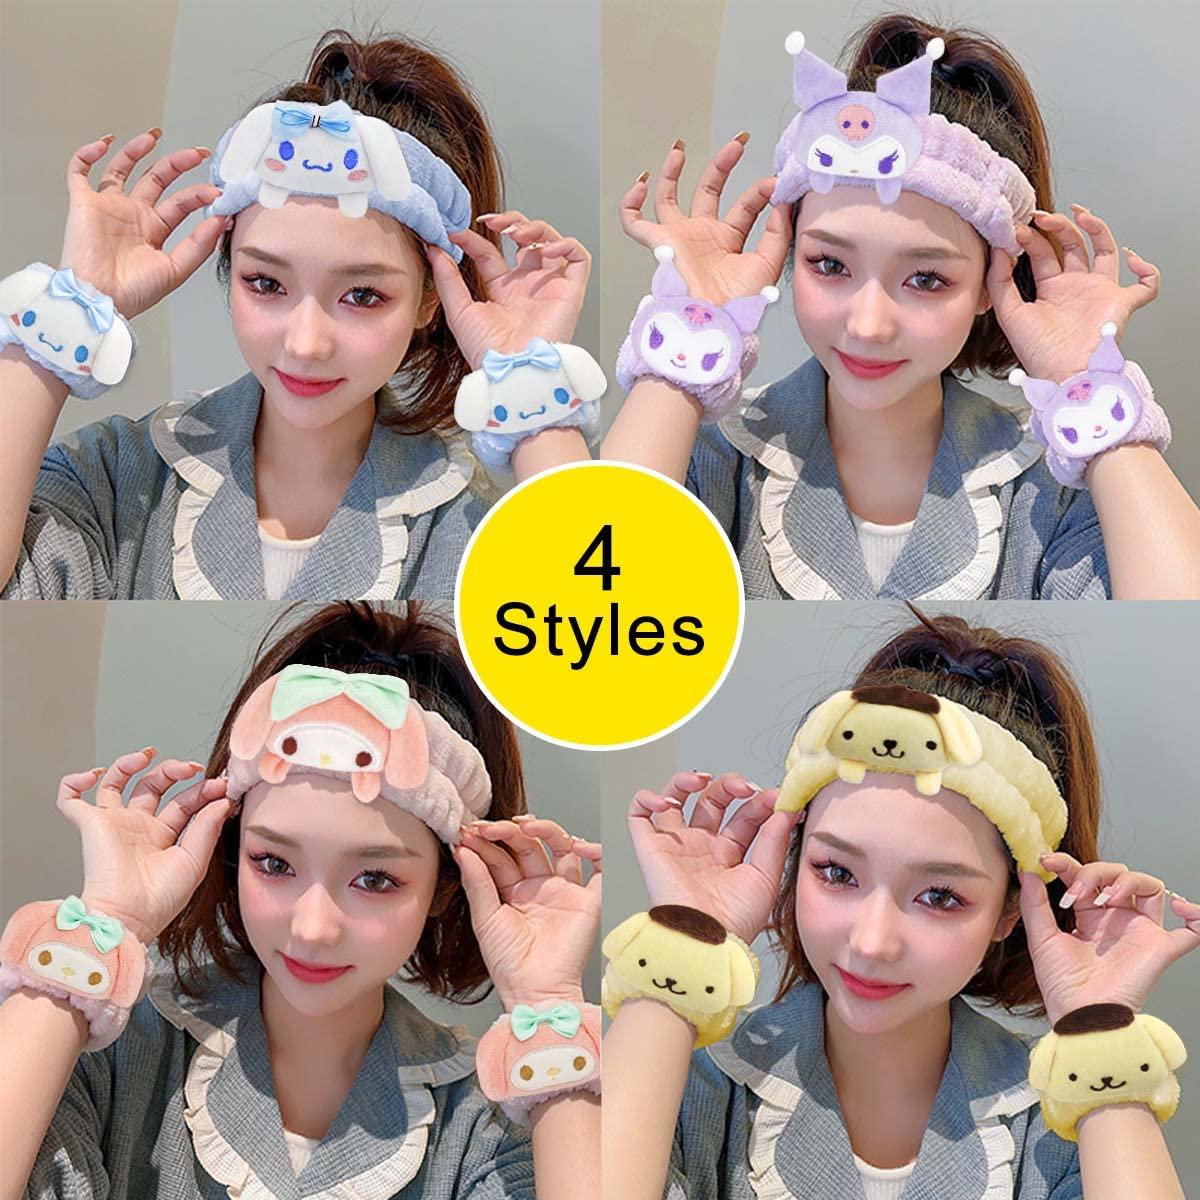 OMG Cute Headbands For Spa, Facials&Makeup Application @ Best